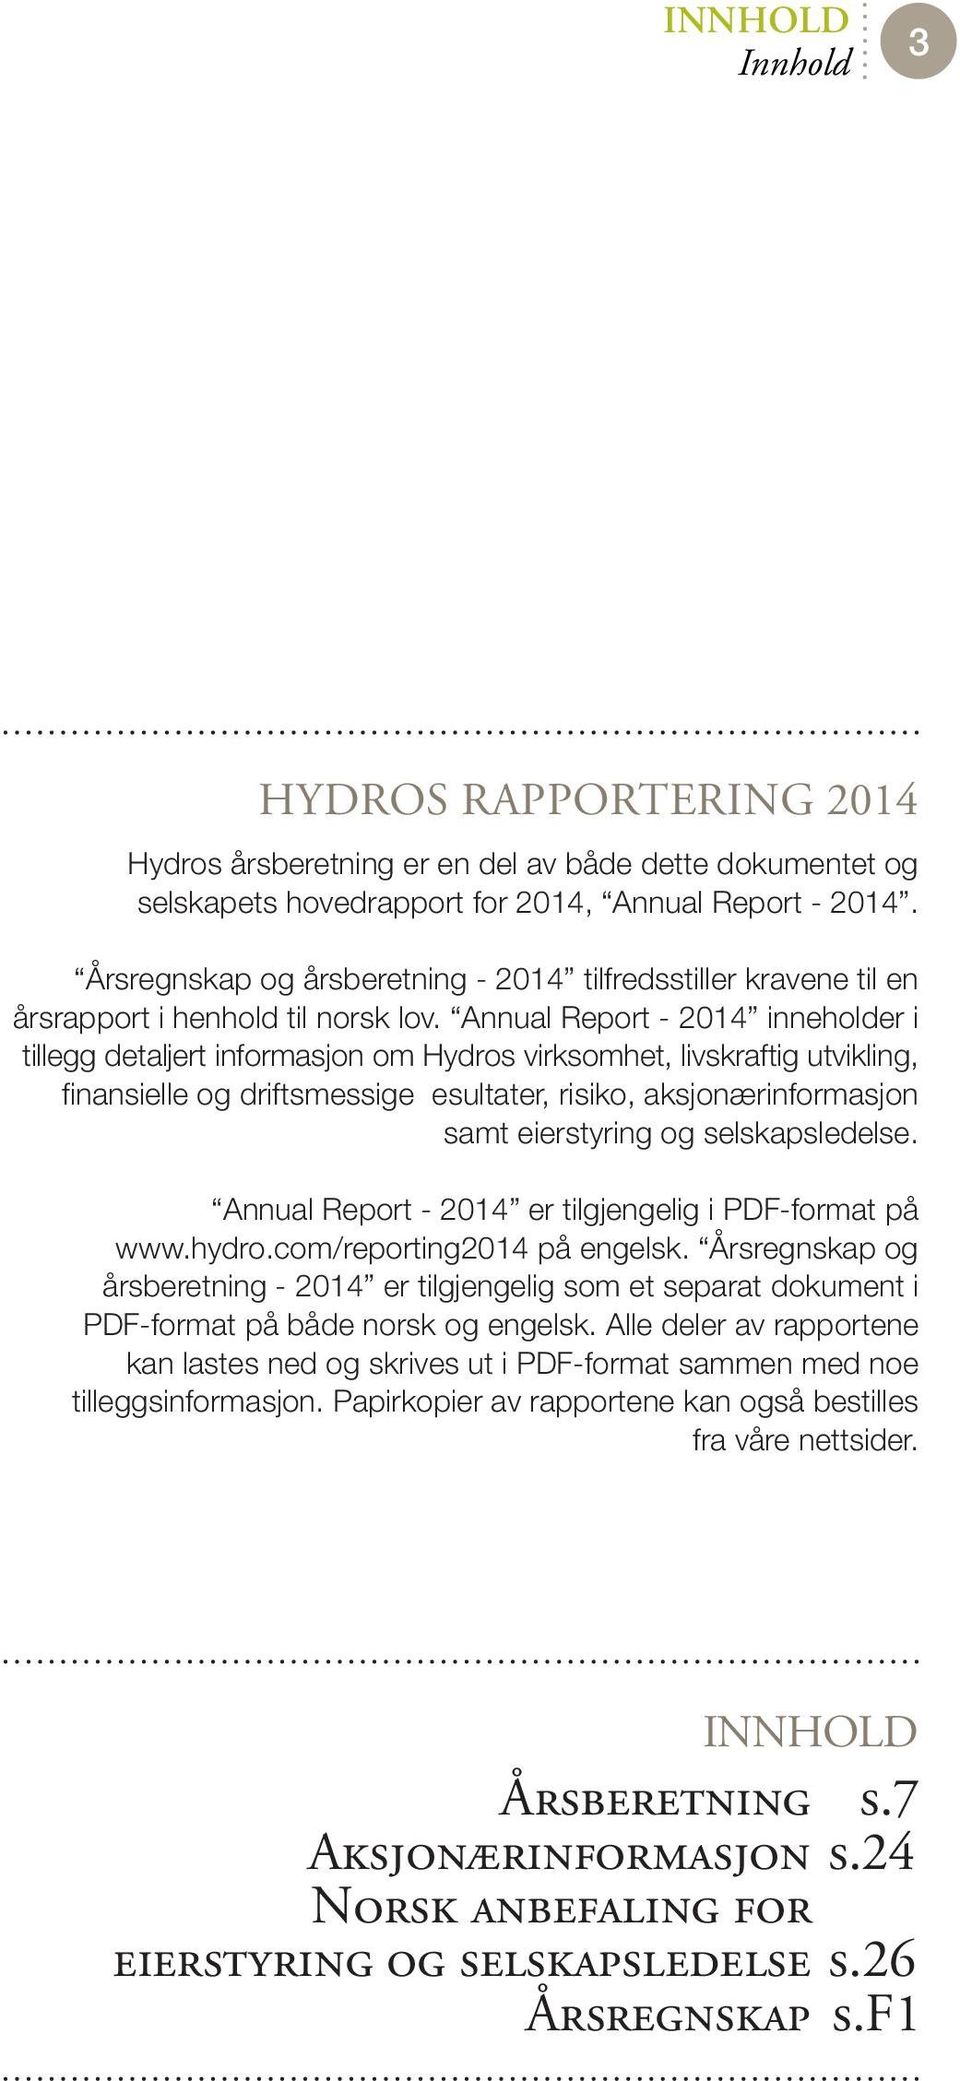 Annual Report - 2014 inneholder i tillegg detaljert informasjon om Hydros virksomhet, livskraftig utvikling, finansielle og driftsmessige esultater, risiko, aksjonærinformasjon samt eierstyring og